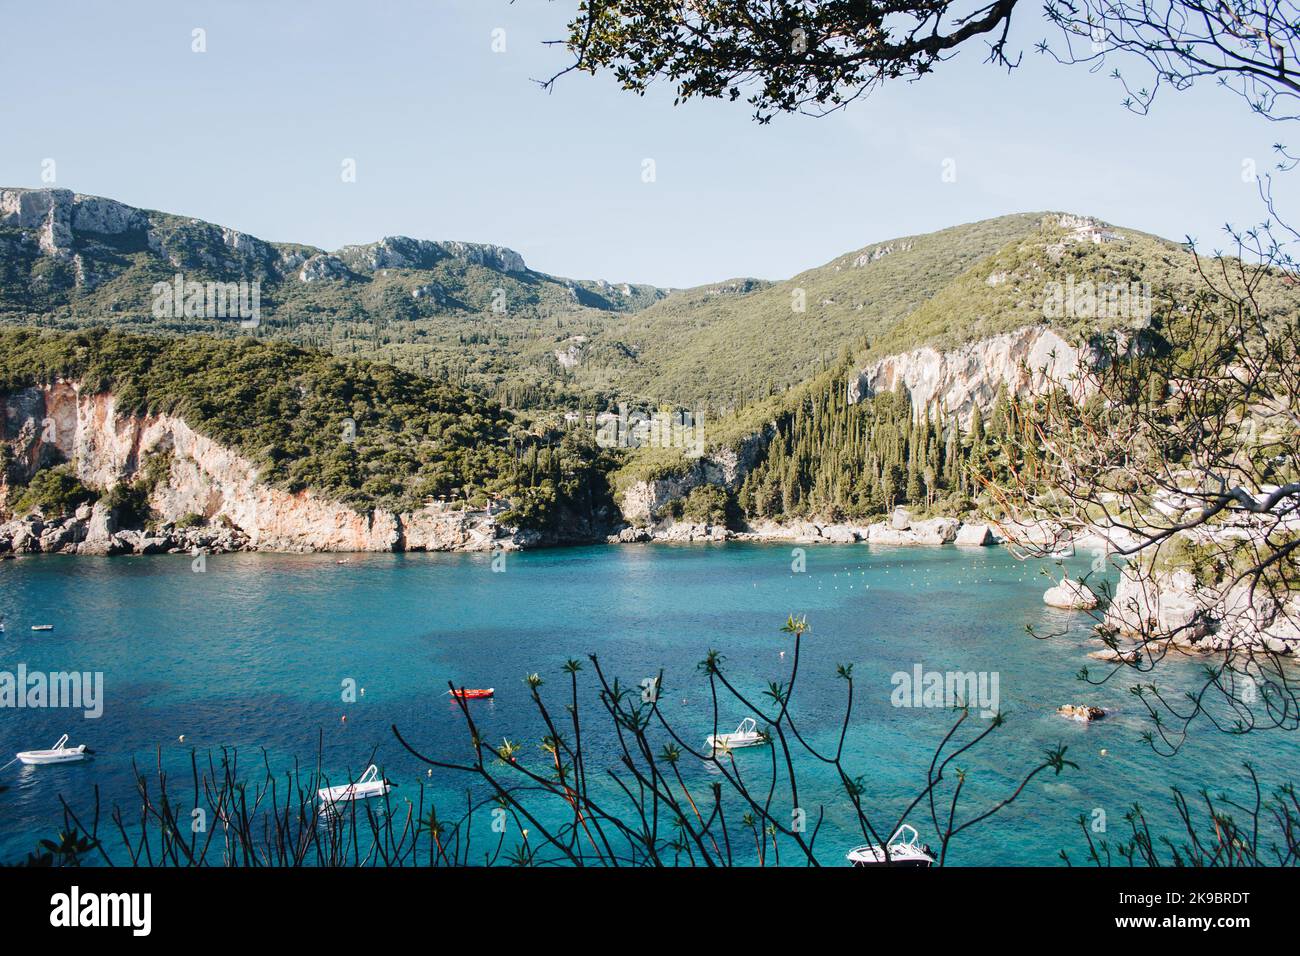 Corfù, Grecia. Una vista di un'enorme roccia di montagna con piante verdi e alberi che crescono su di essa accanto all'acqua blu dove si trovano le barche a motore. Foto Stock